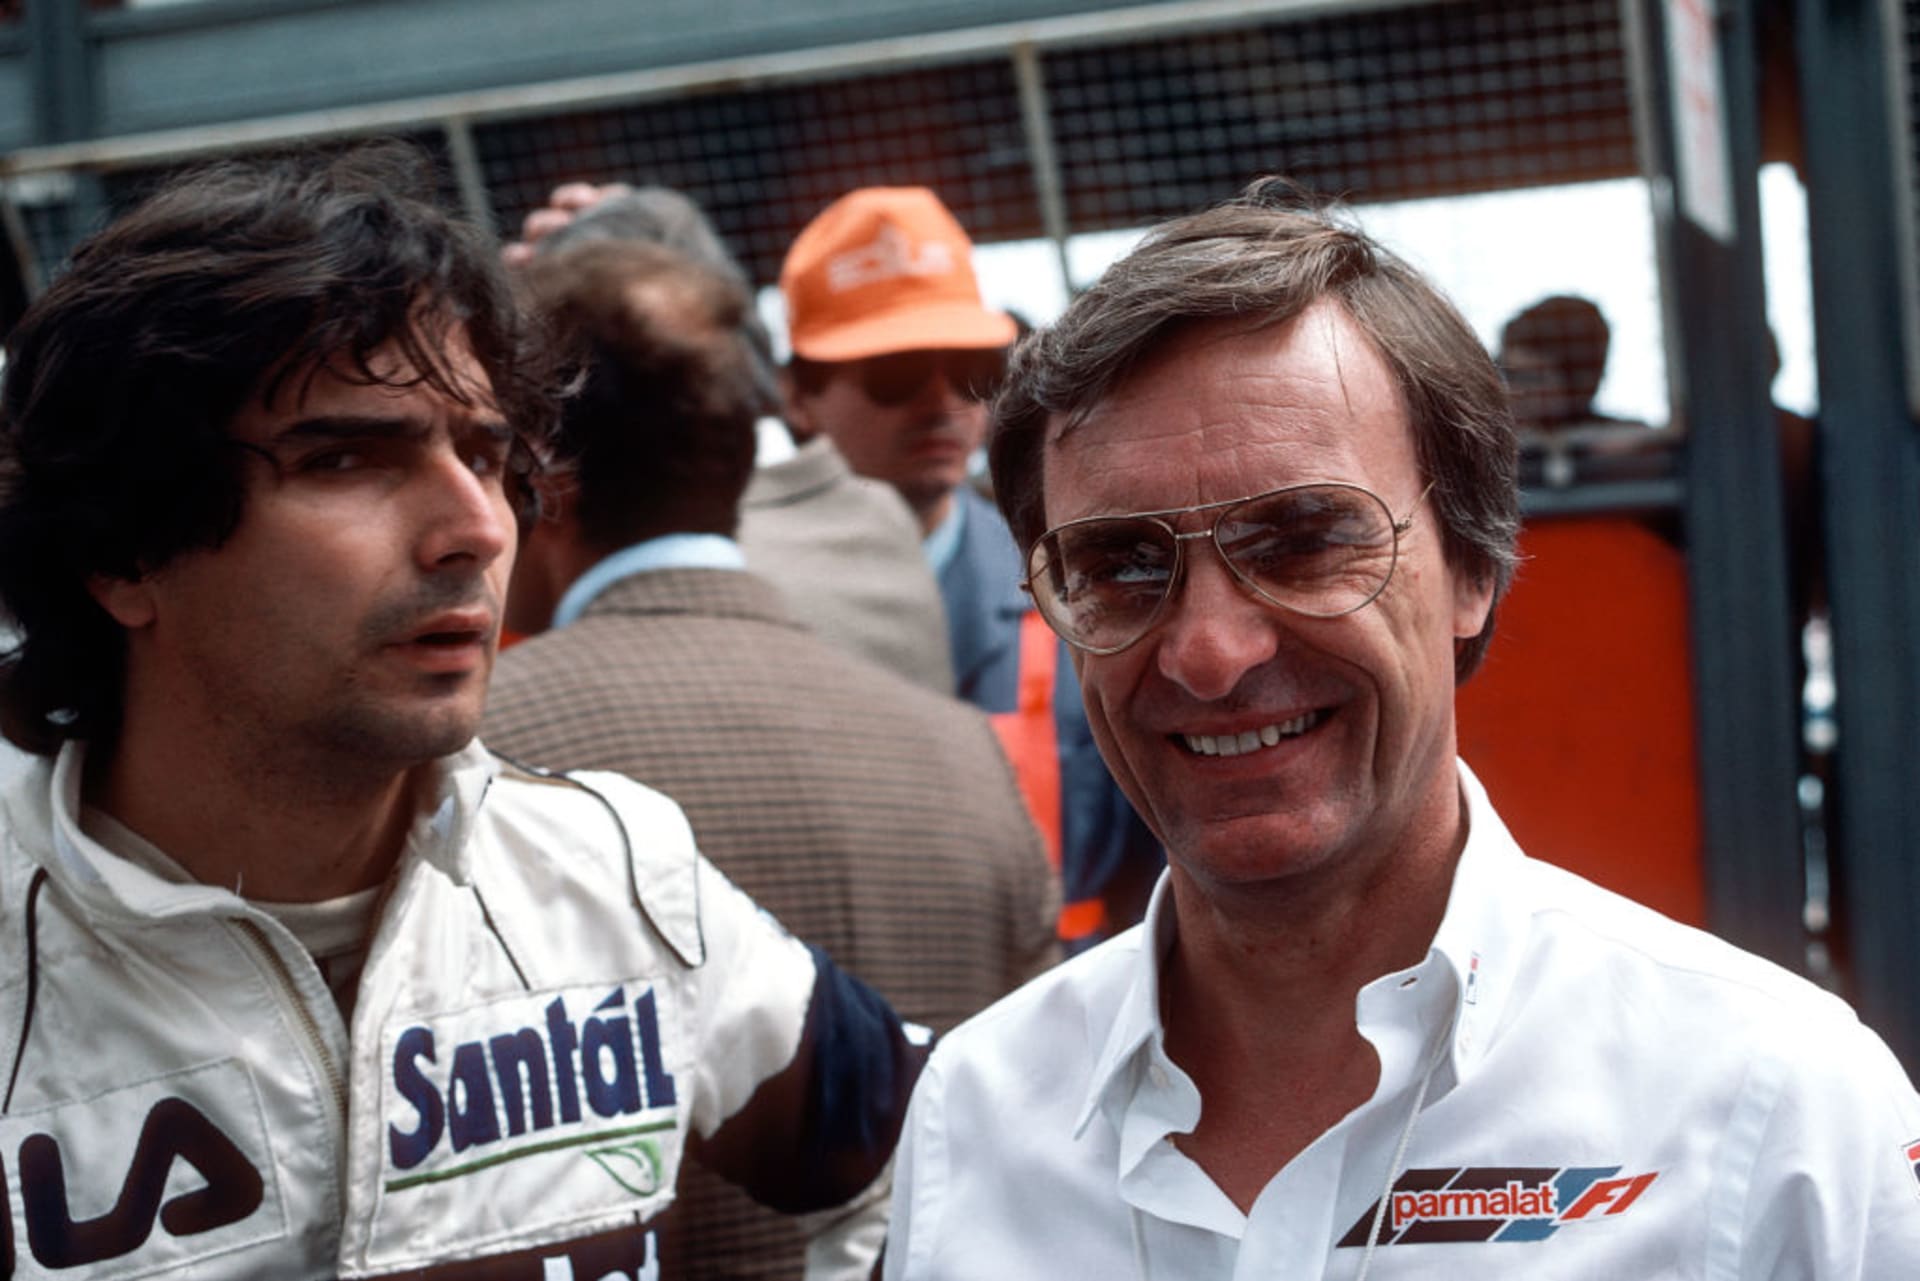 Piquet a Ecclestone coby jezdec a majitel týmu Brabham v 80. letech. Tihle si spolu vždycky náramně rozuměli. Ostatně Ecclestone Hamiltonovo nařčení iqueta z rasismu označil za hromadu sra...